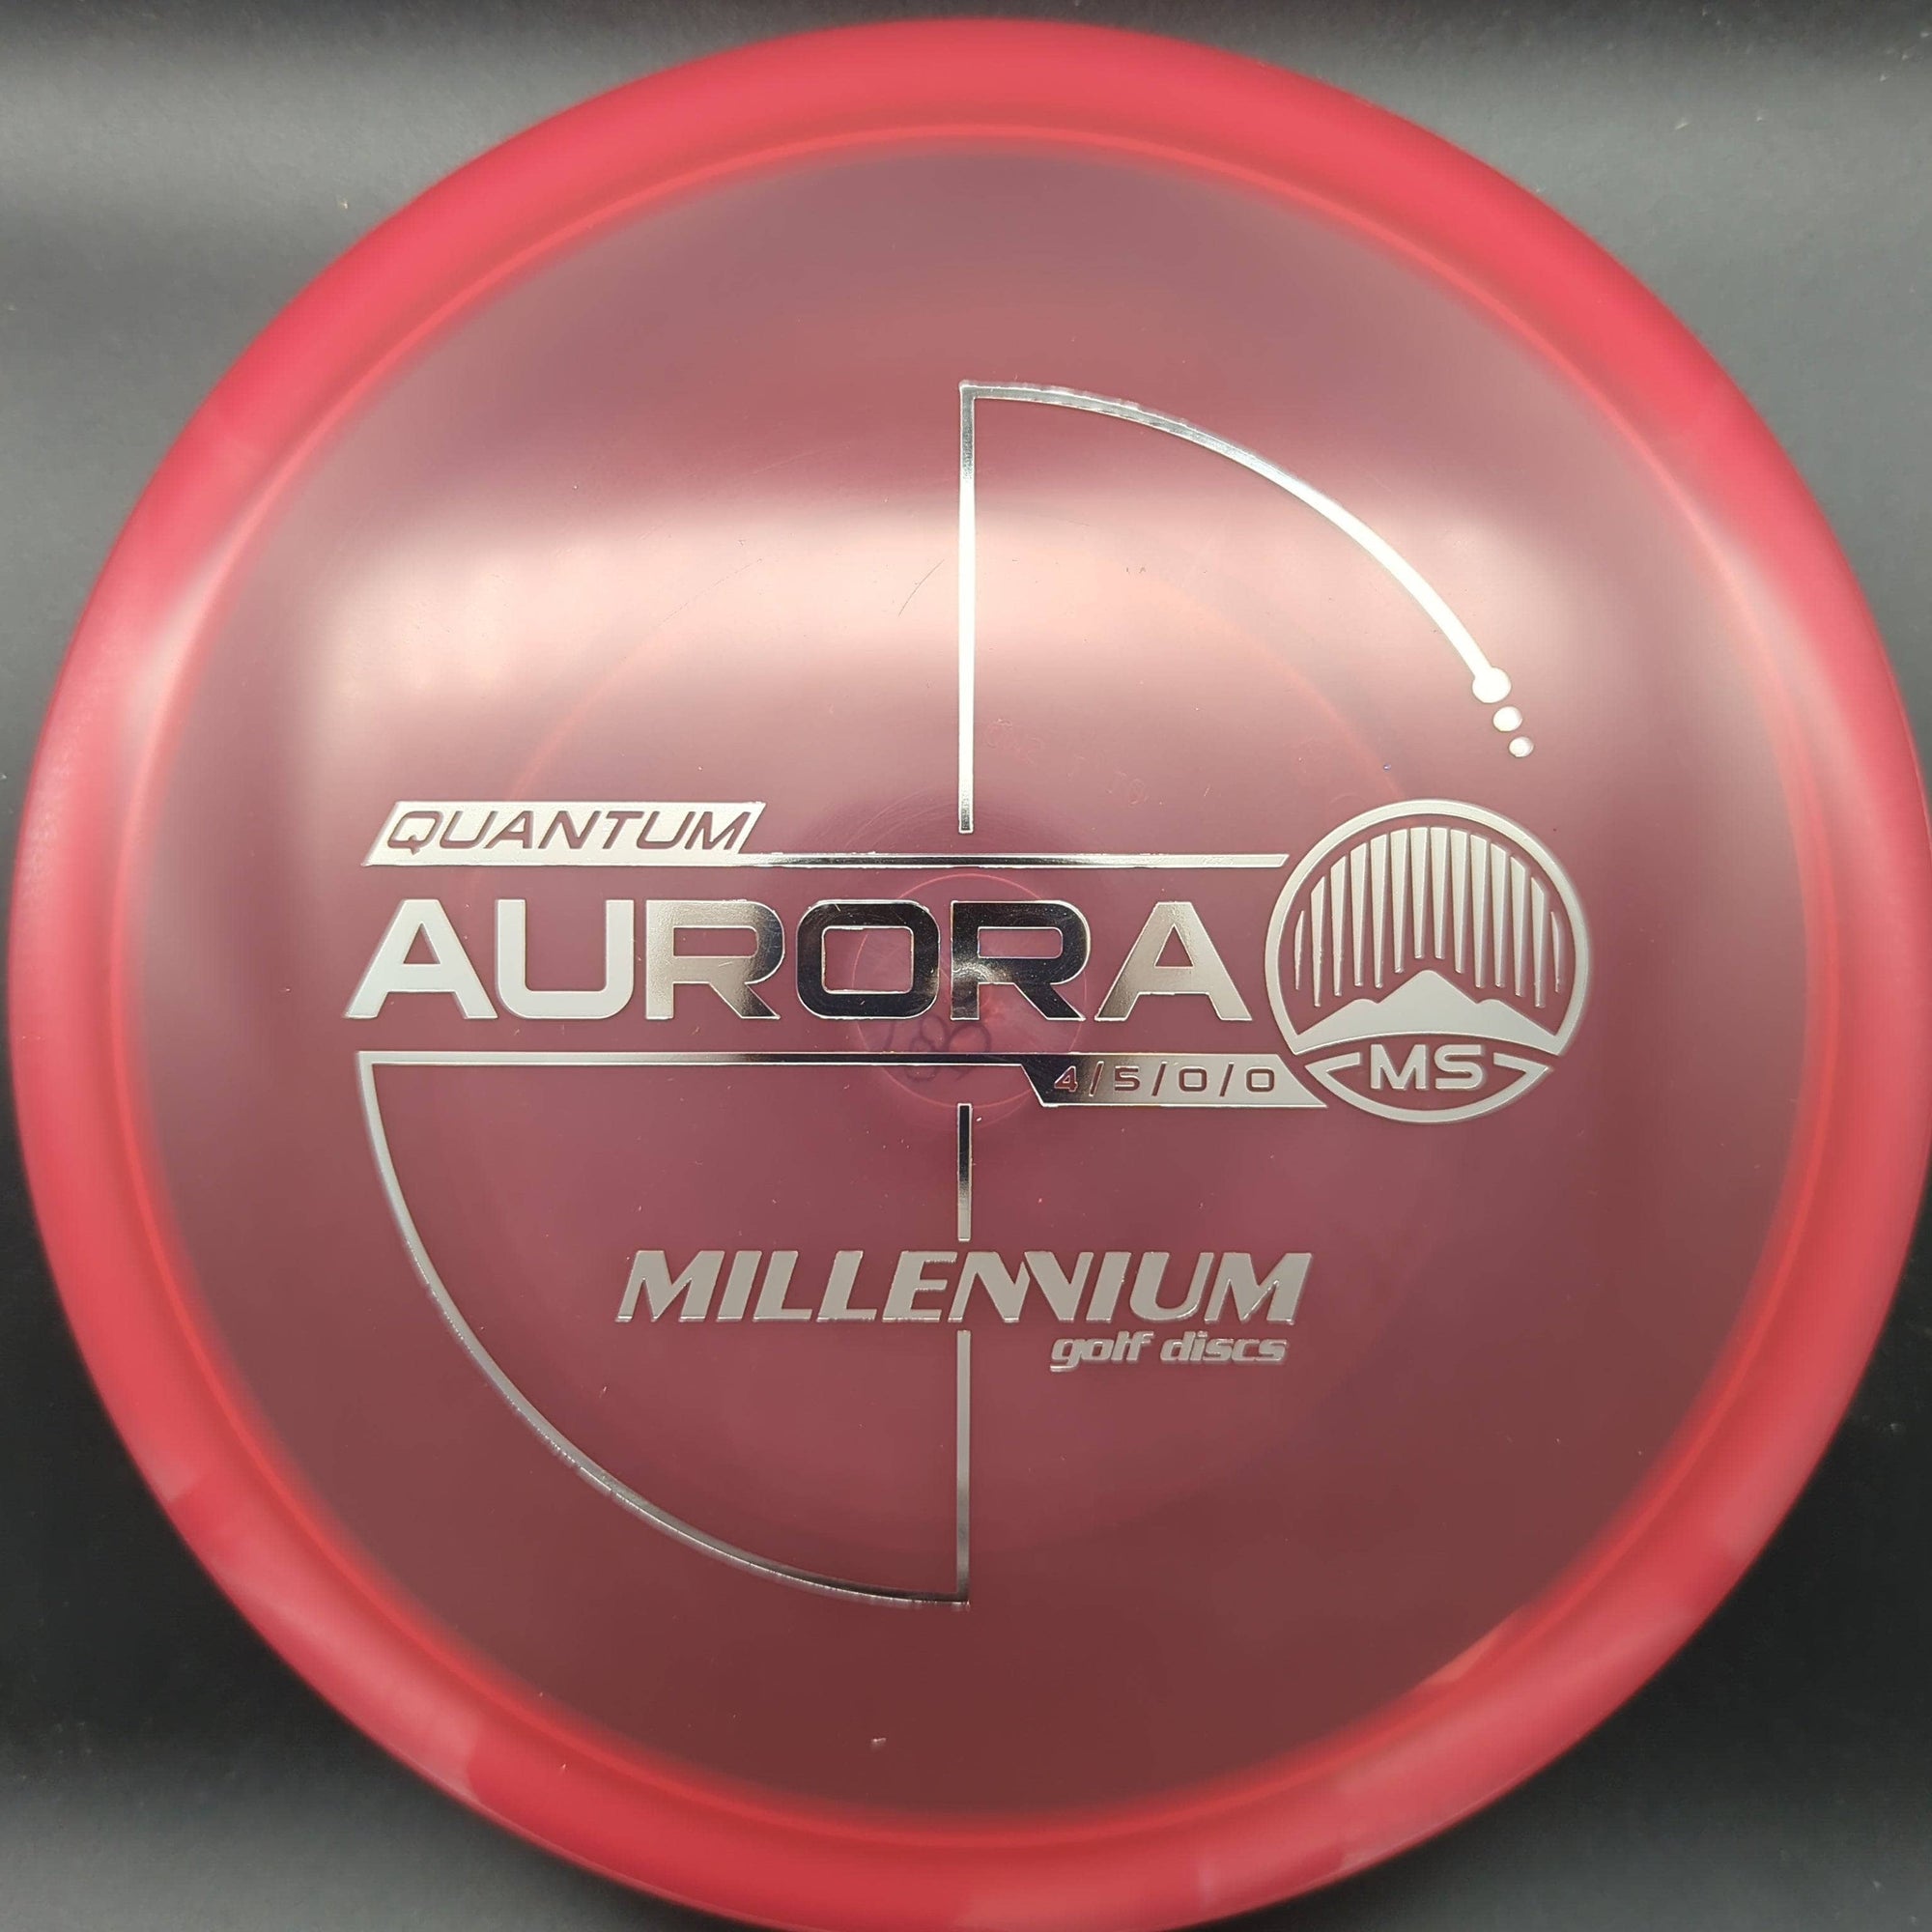 Millennium Discs Mid Range Aurora, Quantum